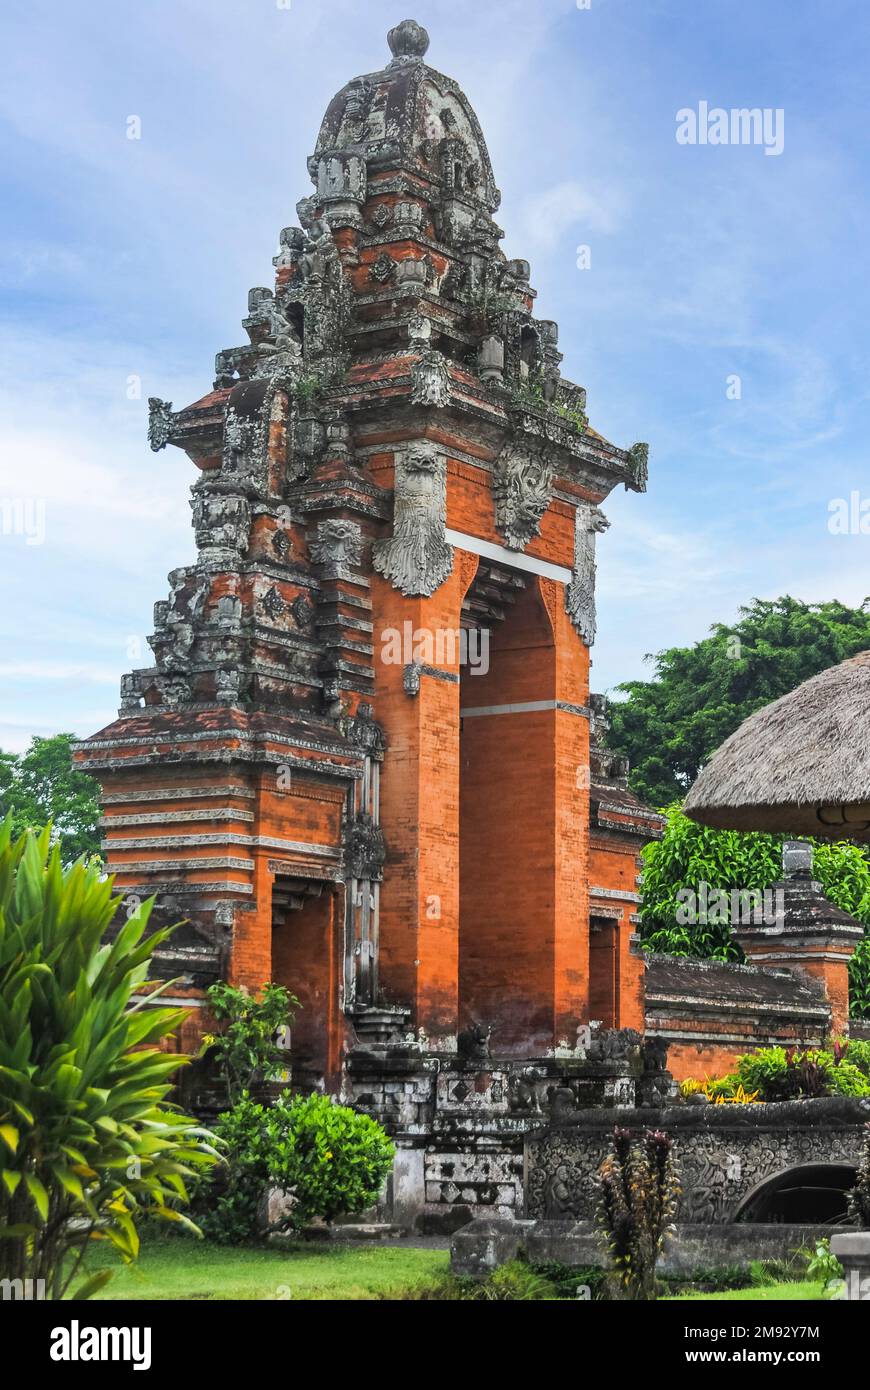 Pura Taman Ayun è un complesso di tempio balinese e giardino con caratteristiche acquatiche situato nel distretto di Mengwi a Badung Regency, Bali, Indonesia. Foto Stock